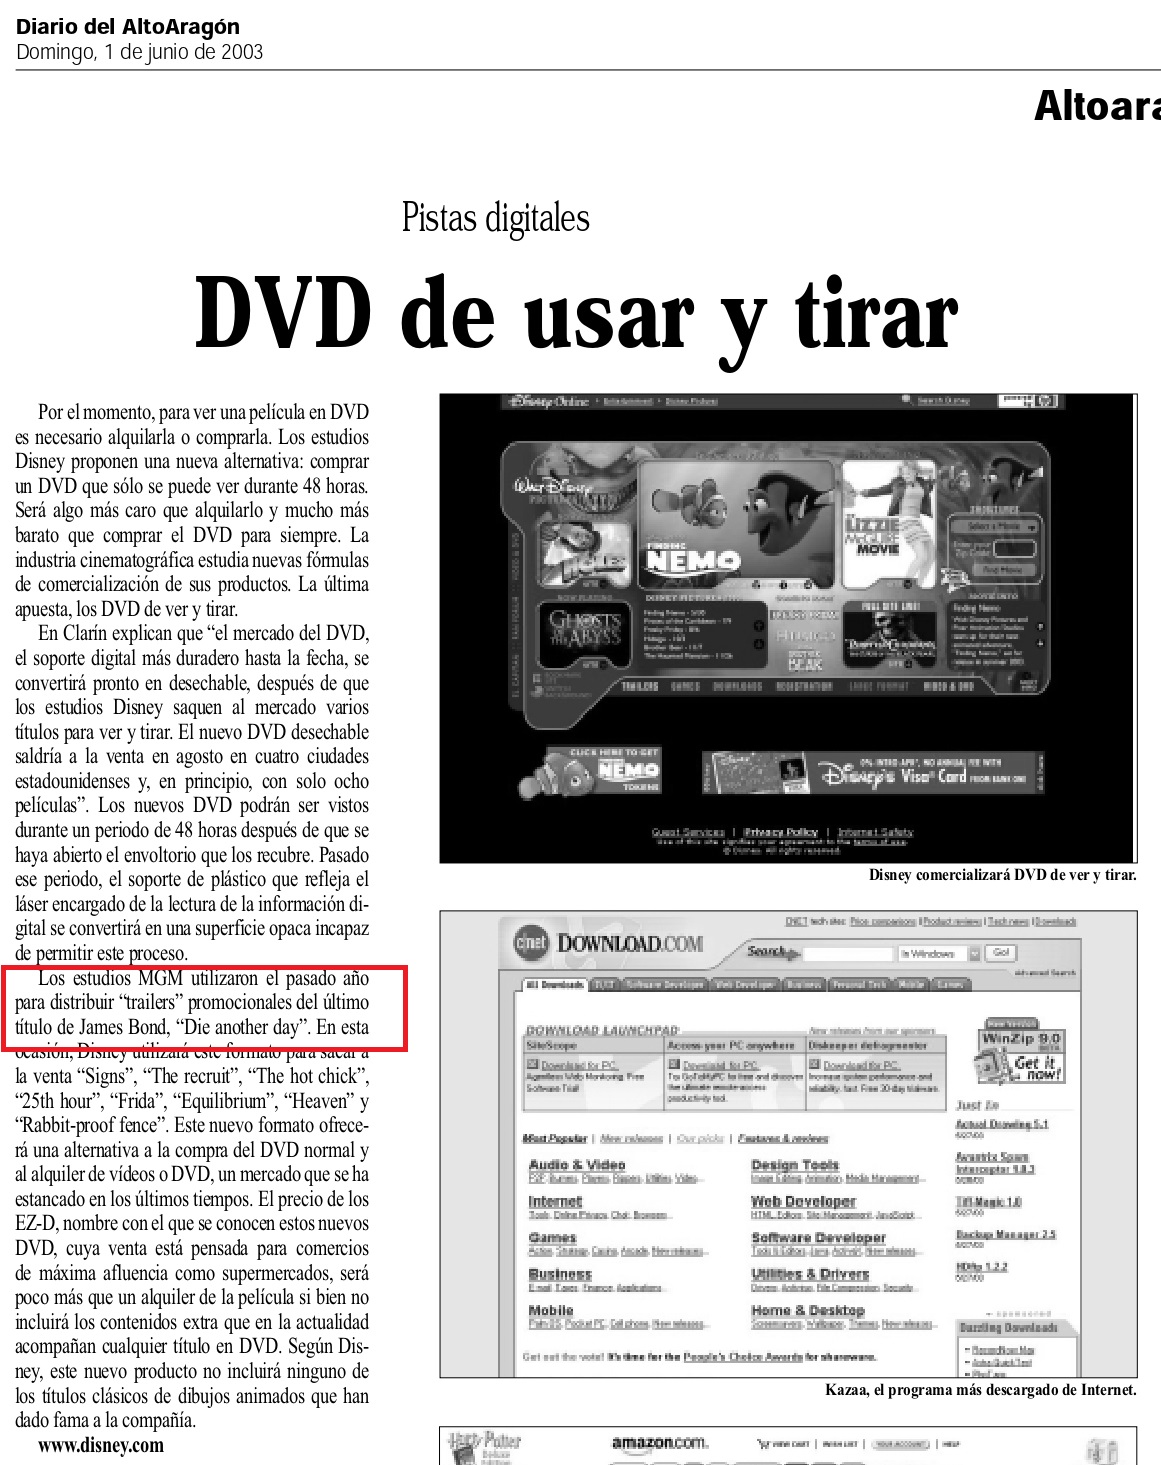 20 2003 06 01 Diario del Alto Aragon Huesca 75 Promocion